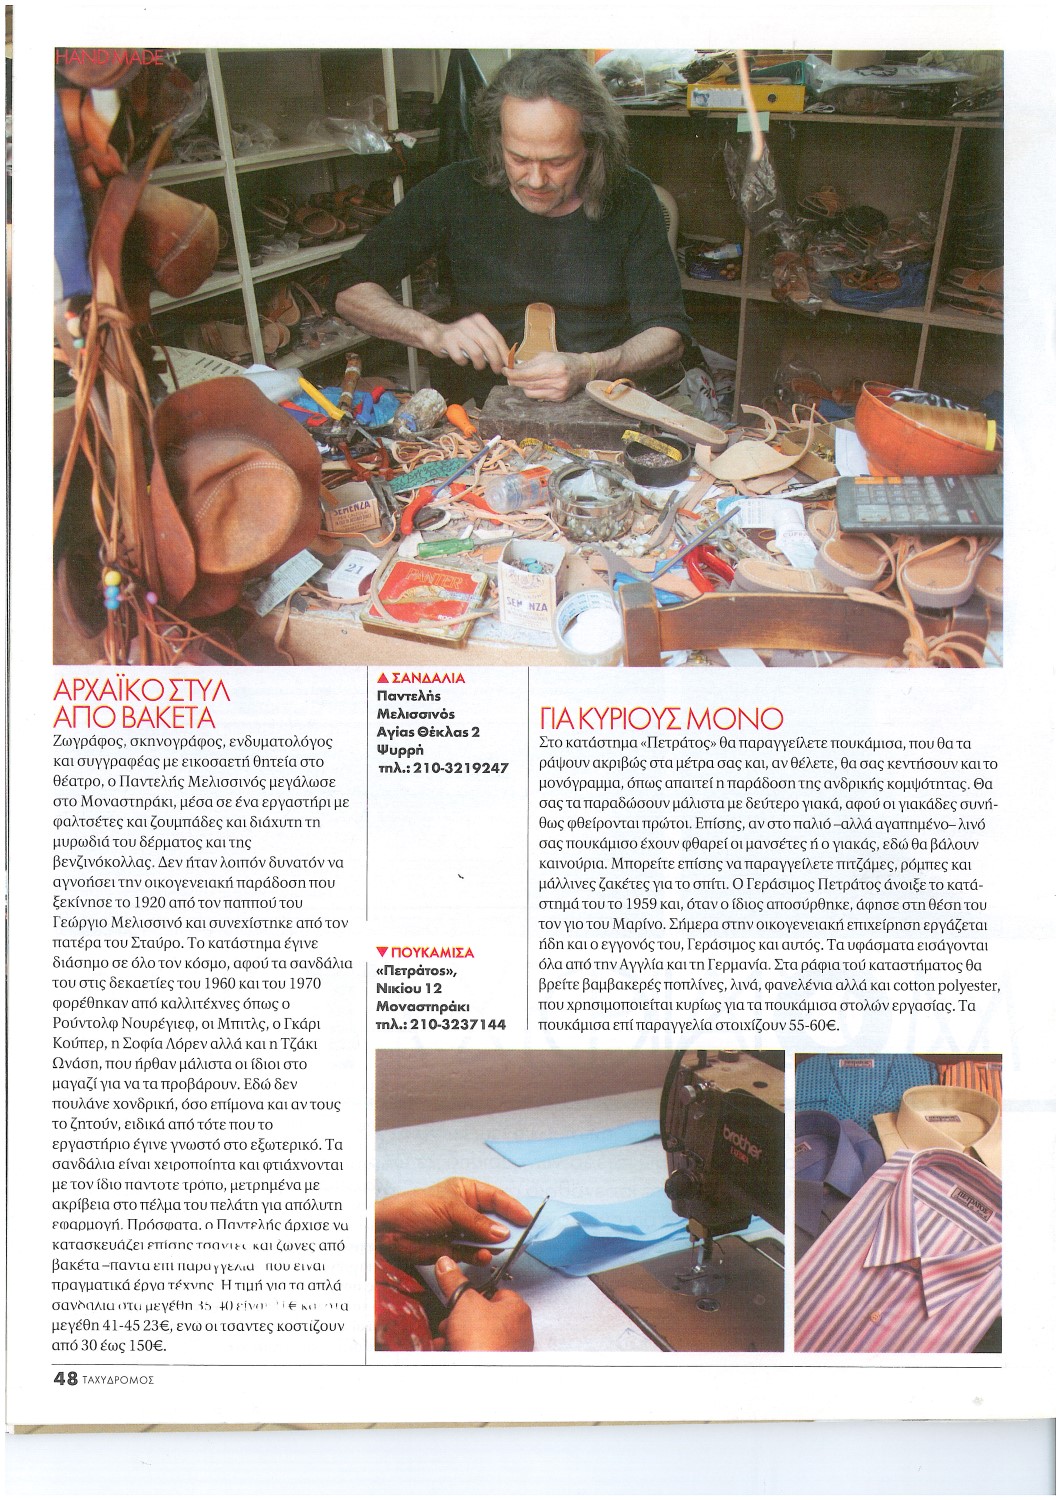 Tahydromos Greek weekly magazine